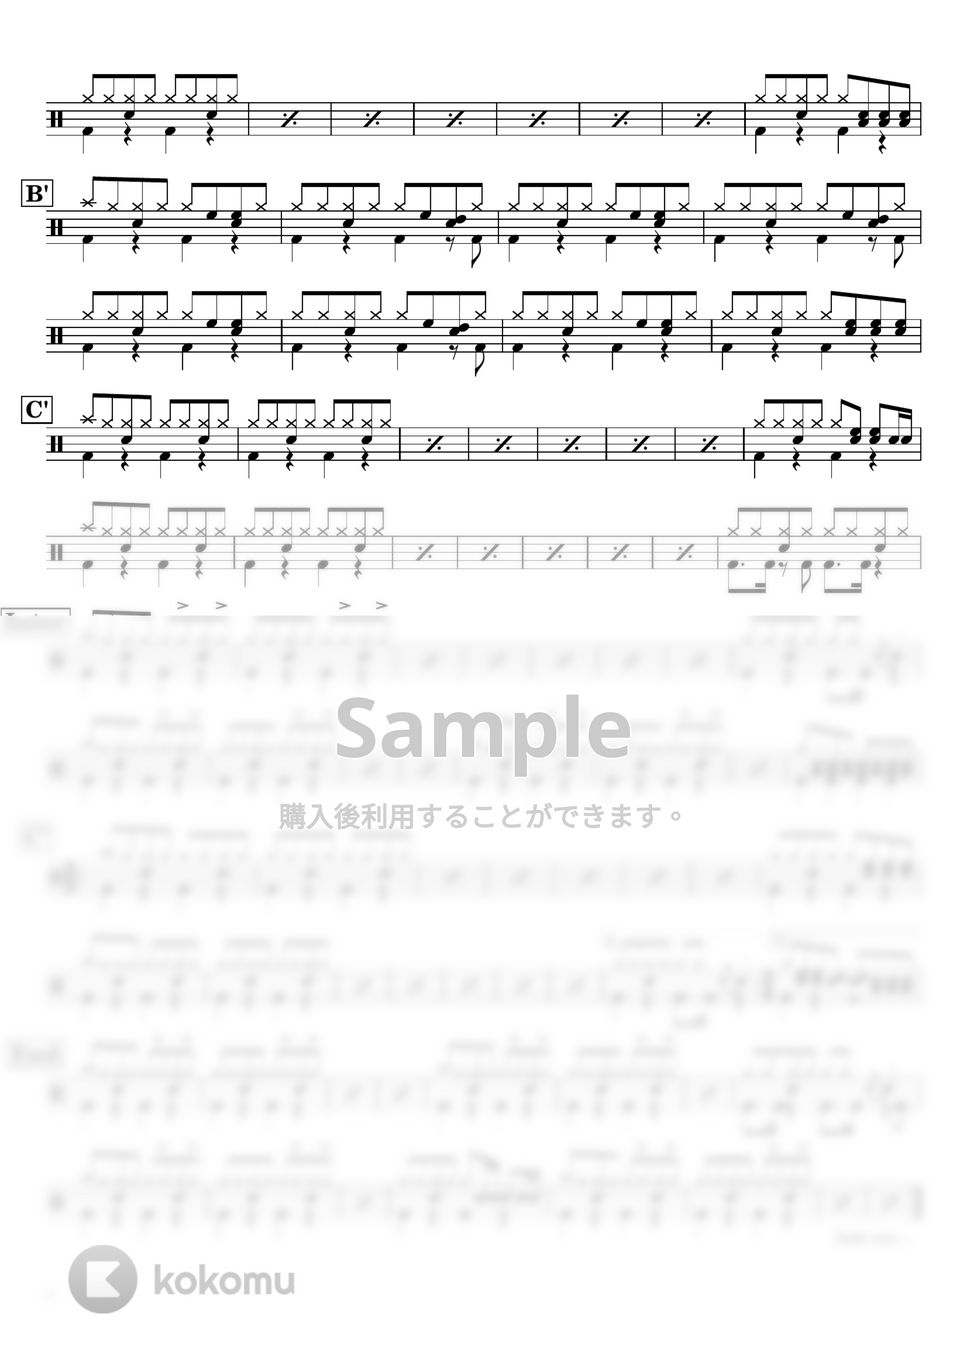 レベッカ - 【ドラム譜】フレンズ【完コピ】 by Taiki Mizumoto